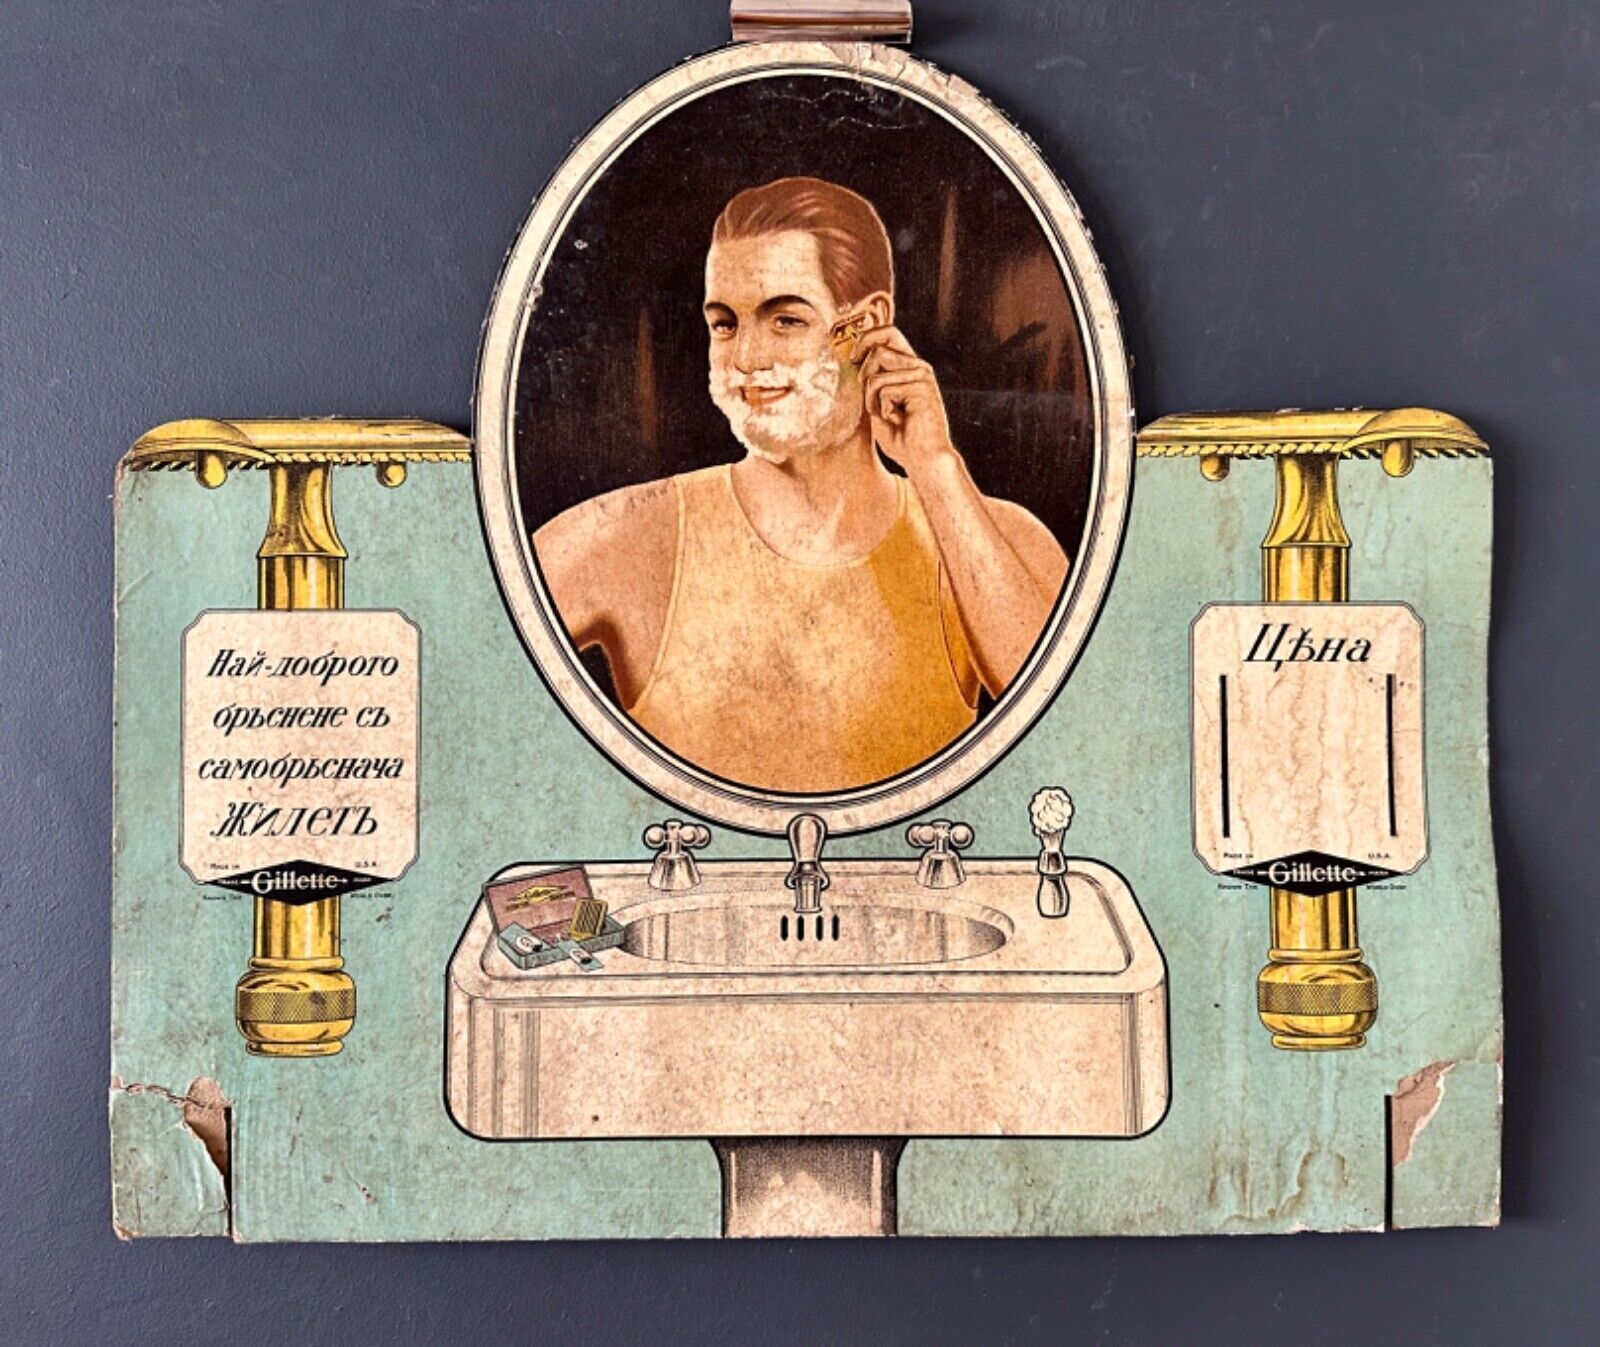 Barber SHOP Gillette Shaving Razors 1920’s Advertising Poster 